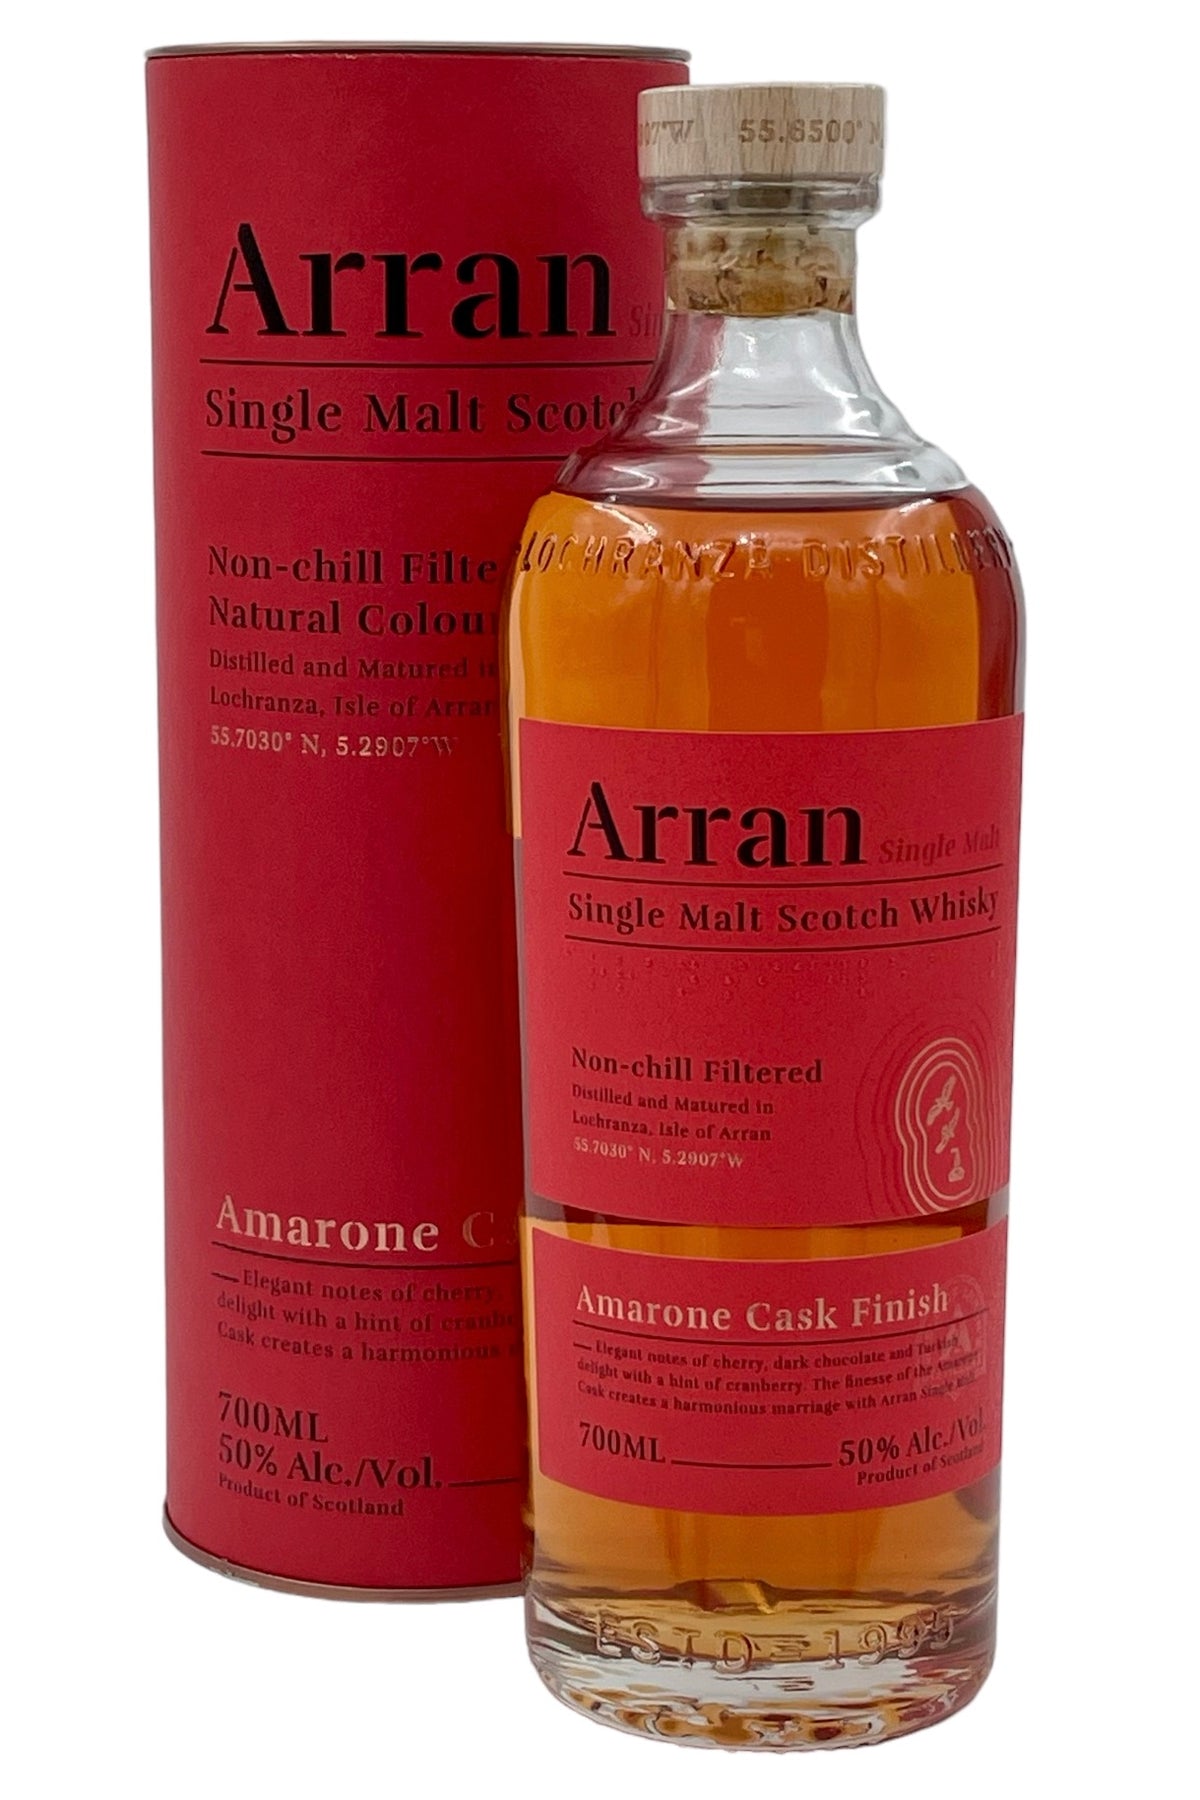 Arran Amarone Cask Single Malt Scotch Whisky